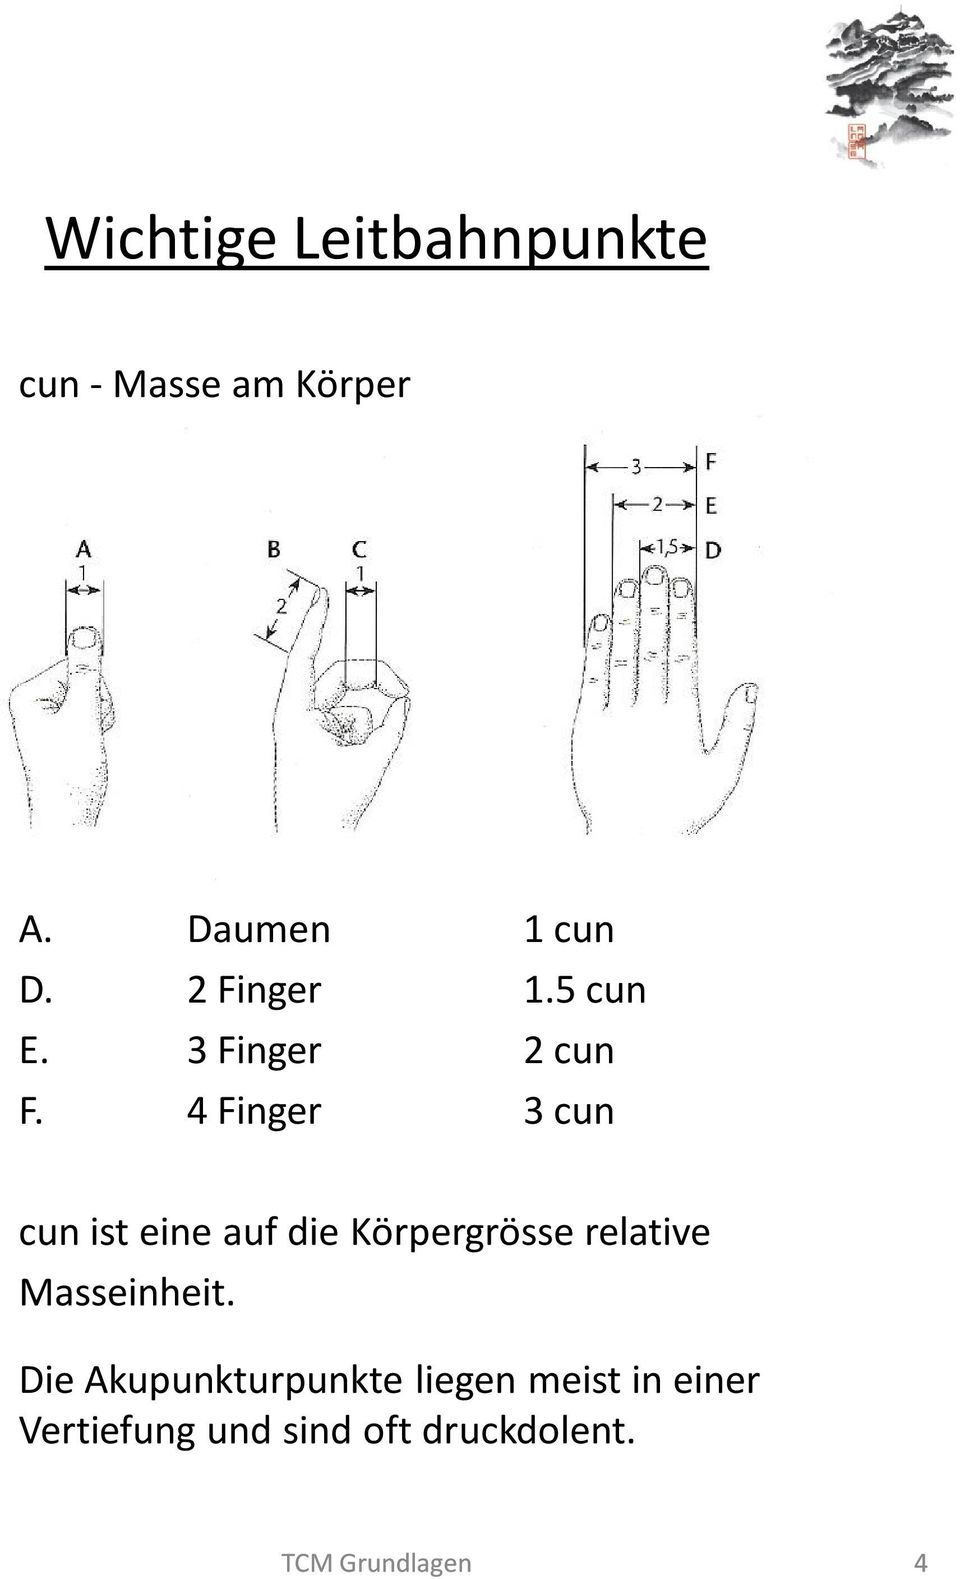 4 Finger 3 cun cun ist eine auf die Körpergrösse relative